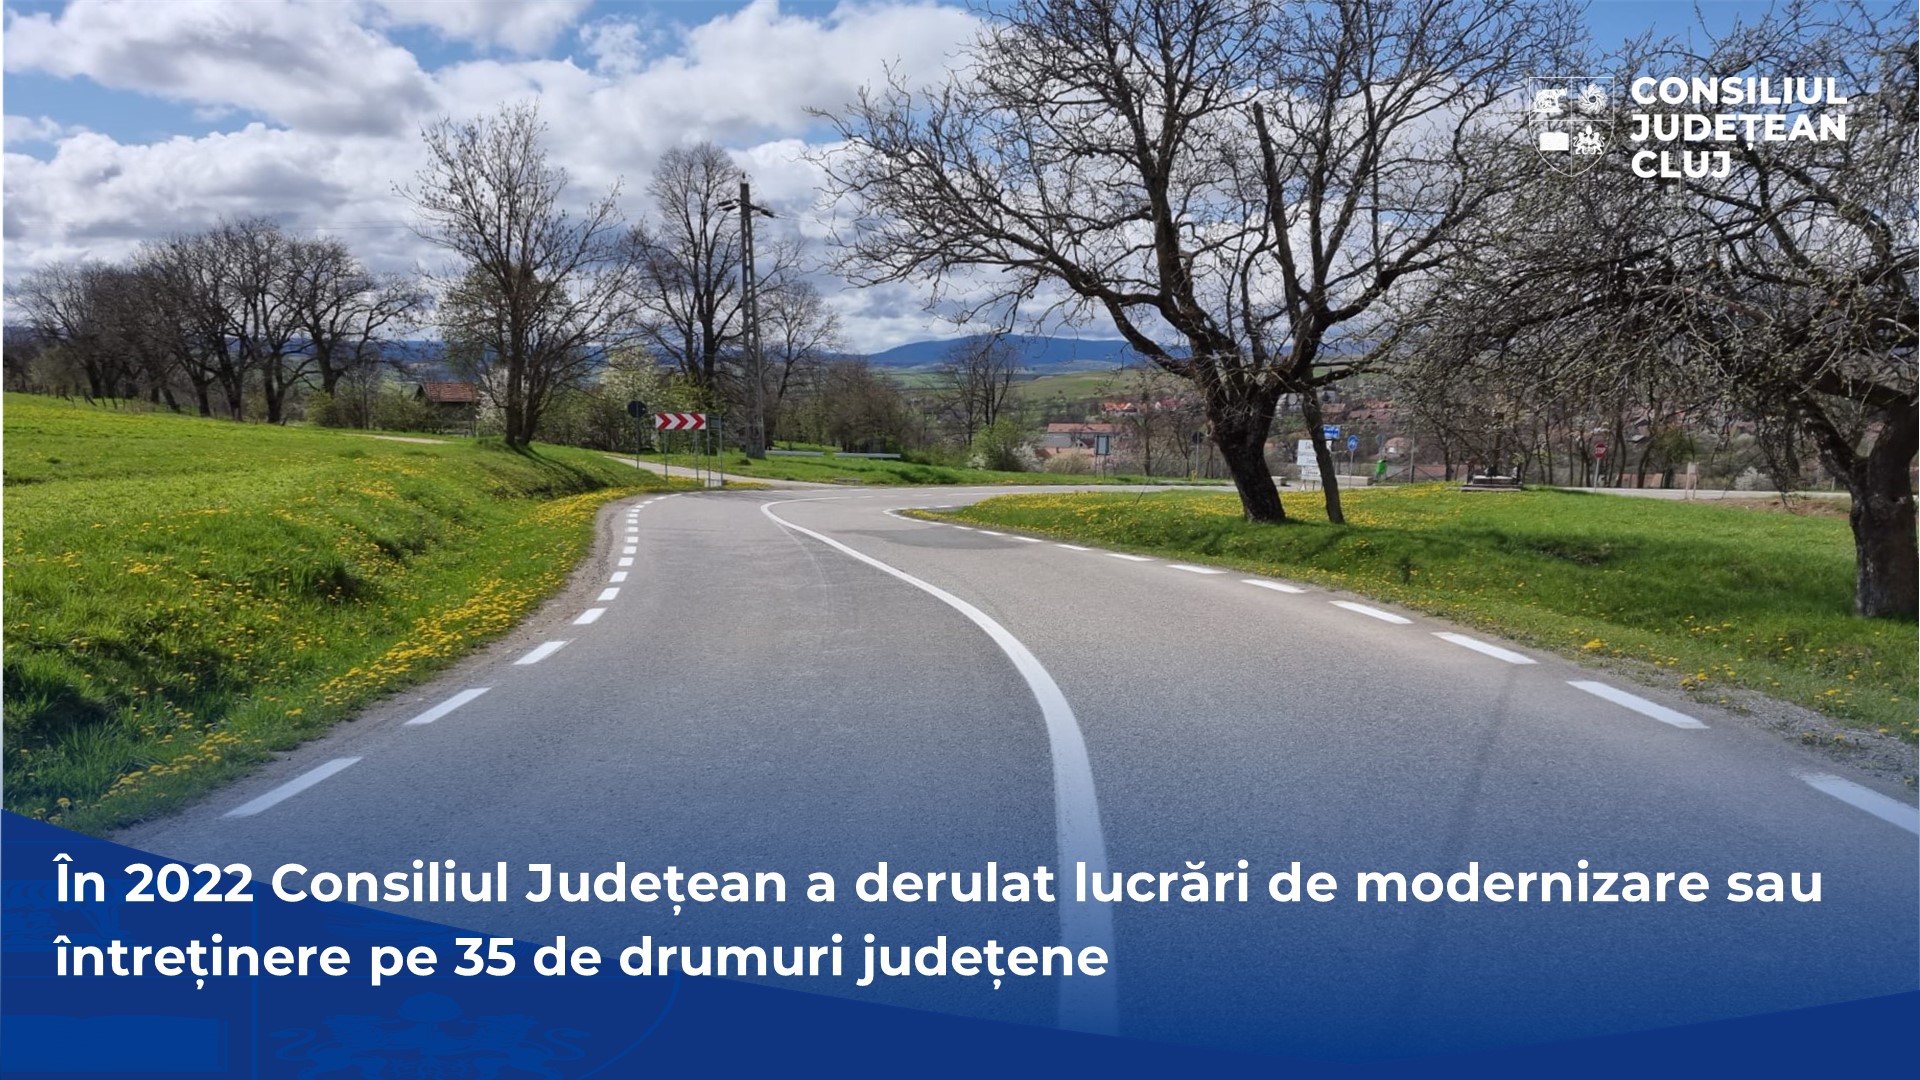 Lucrări de modernizare pe 35 de drumuri județene, derulate în 2022